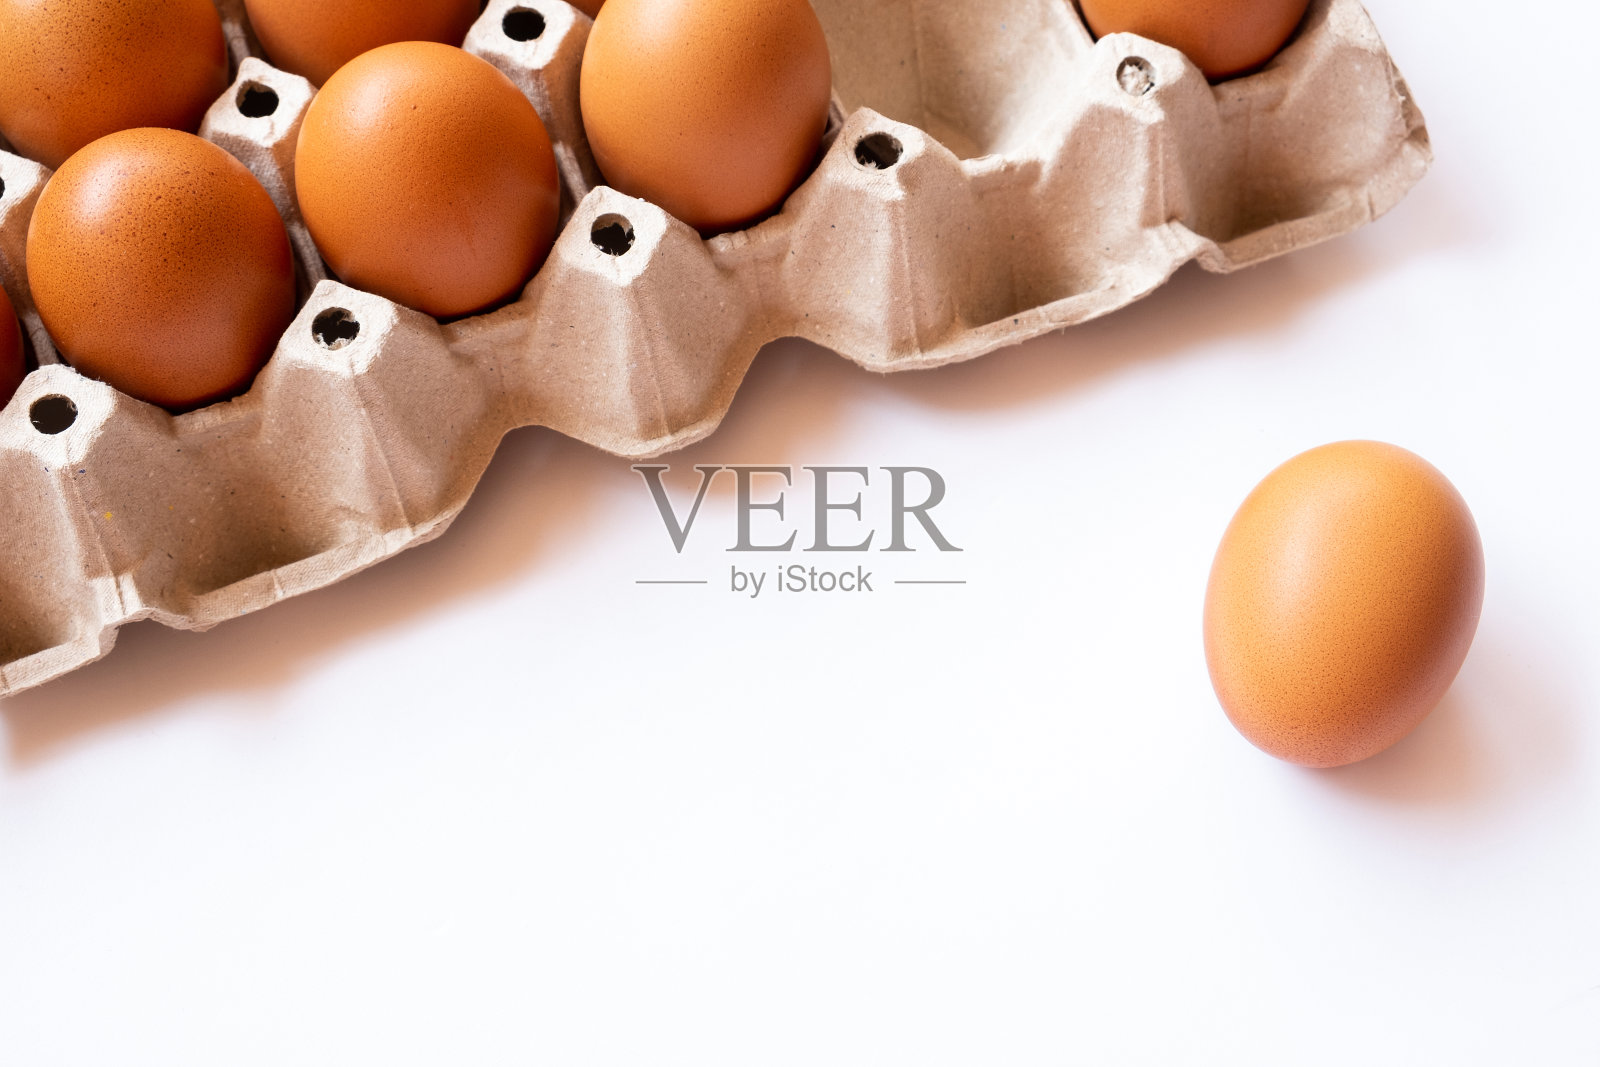 靠近托盘上的有机鸡蛋。廉价的健康的蛋白质。煎蛋是早餐的好食物照片摄影图片